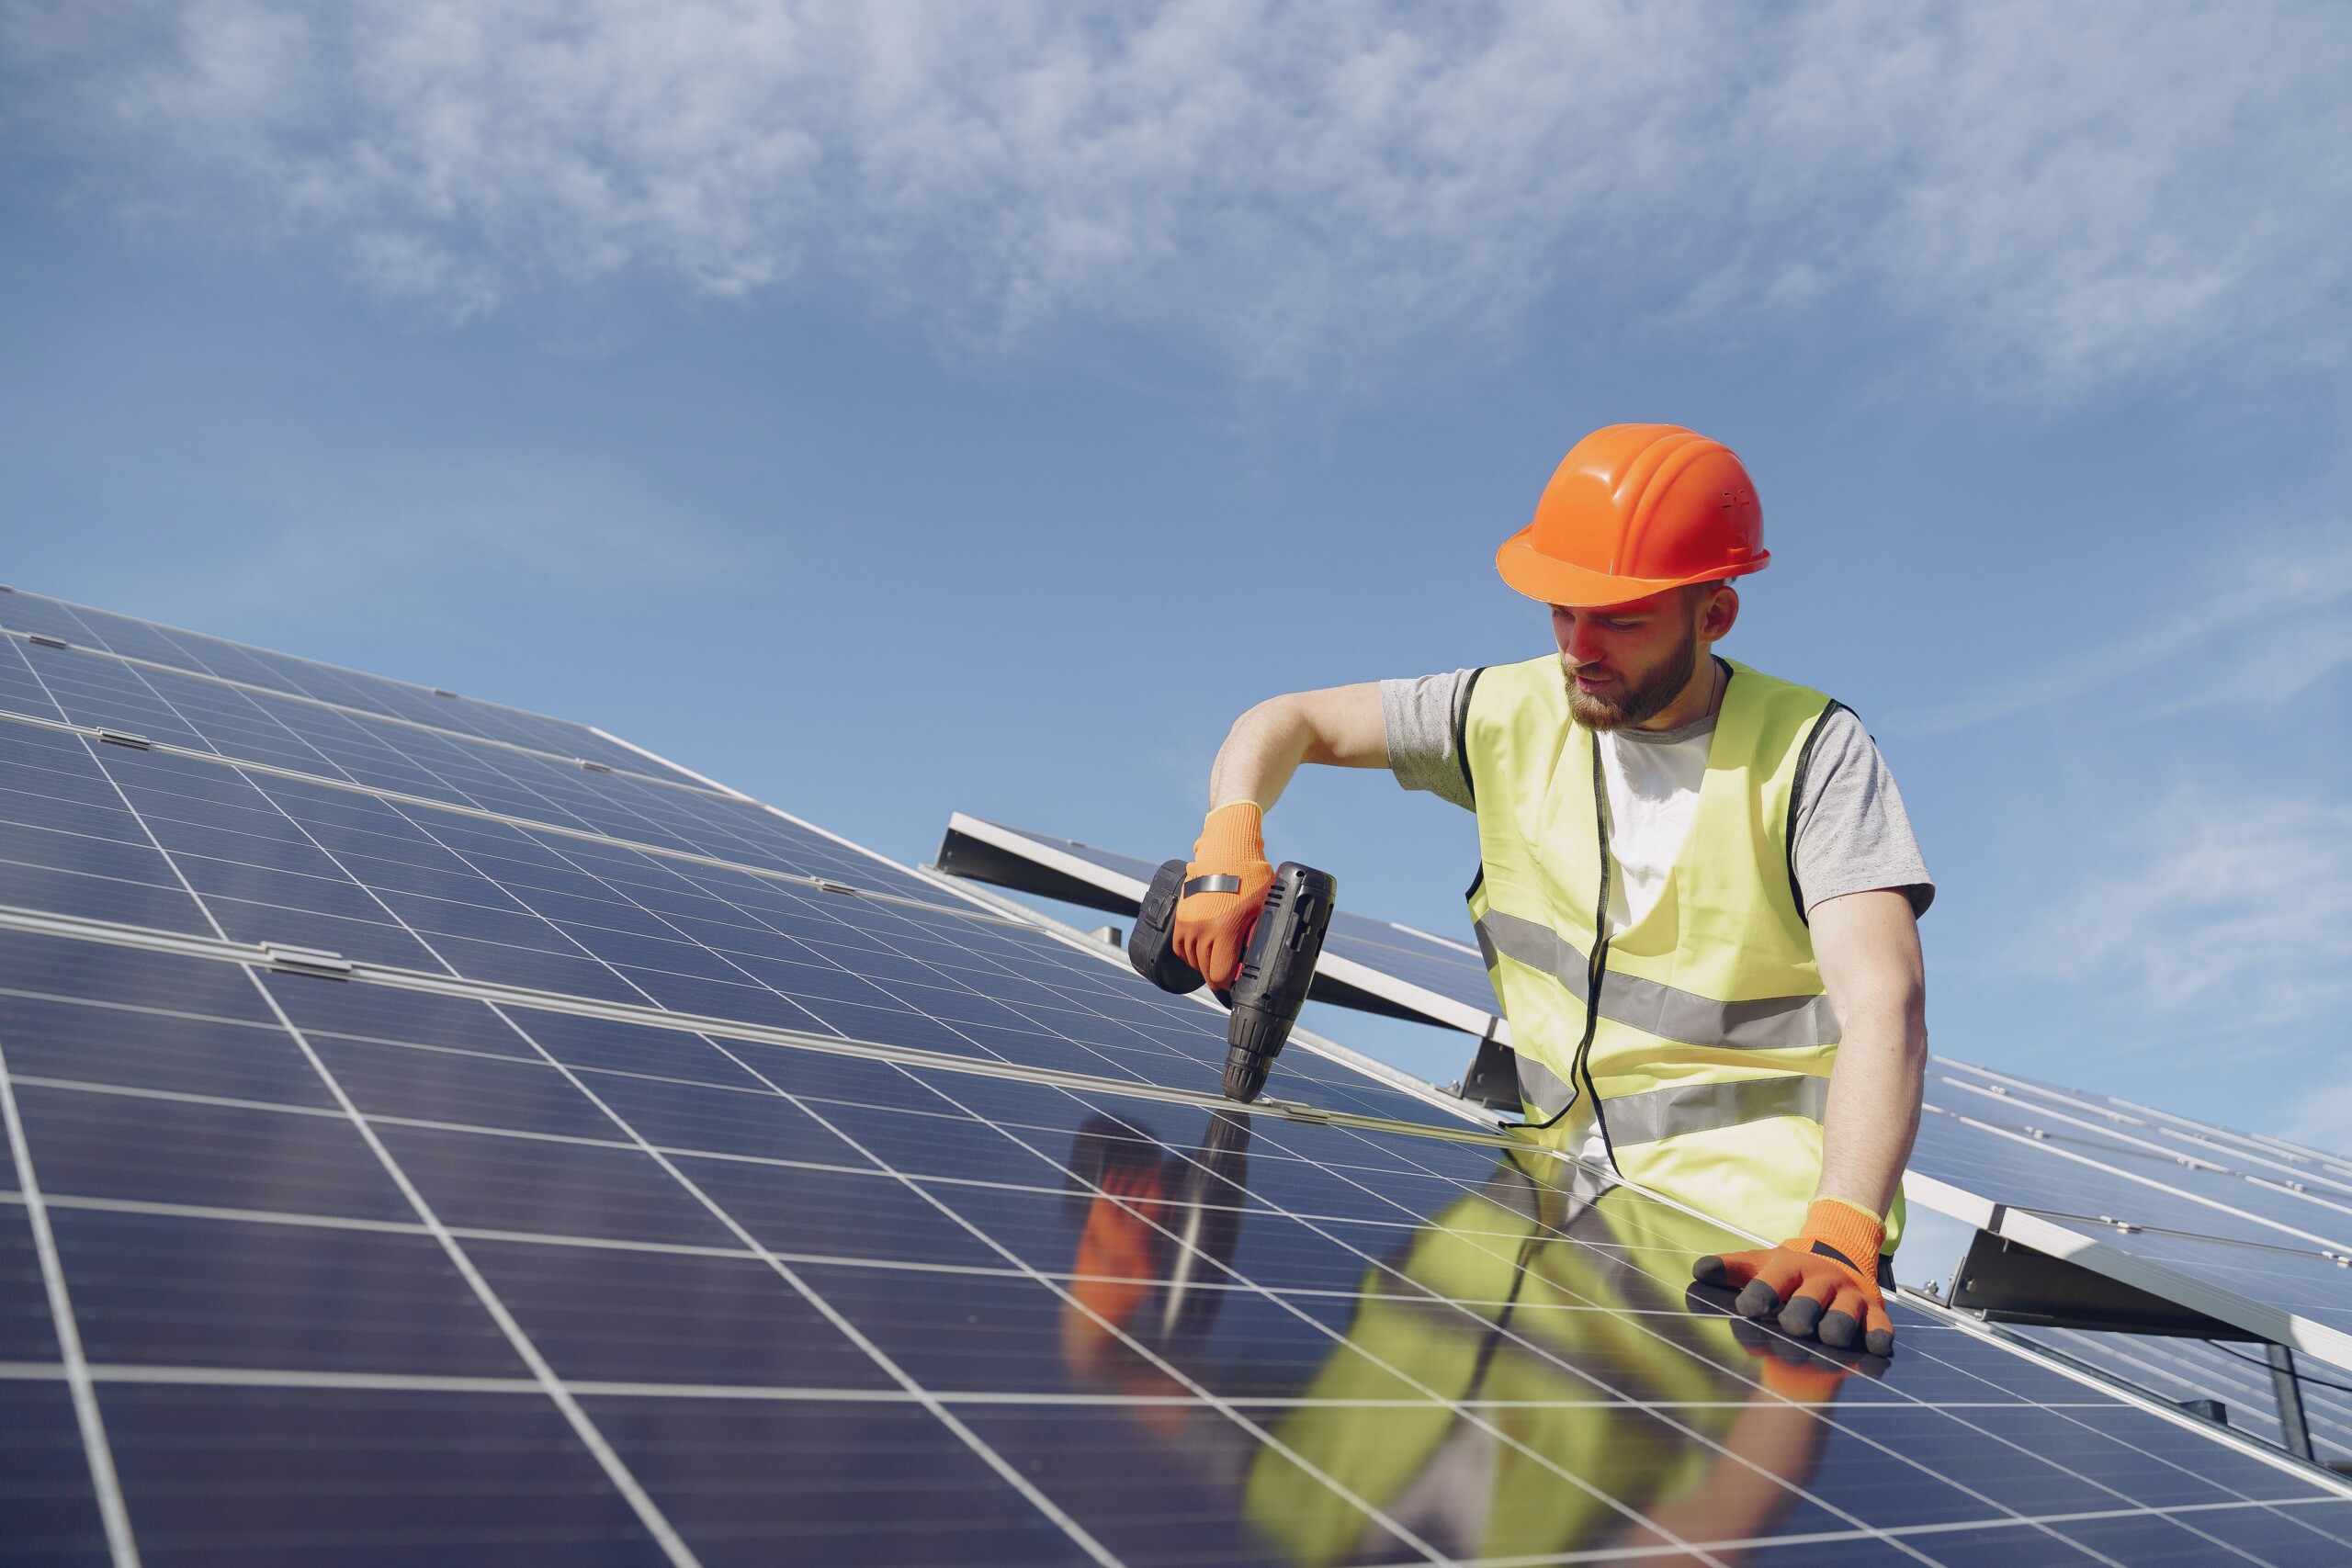 nj-solar-energy-incentives-solar-rebates-tax-credits-2020